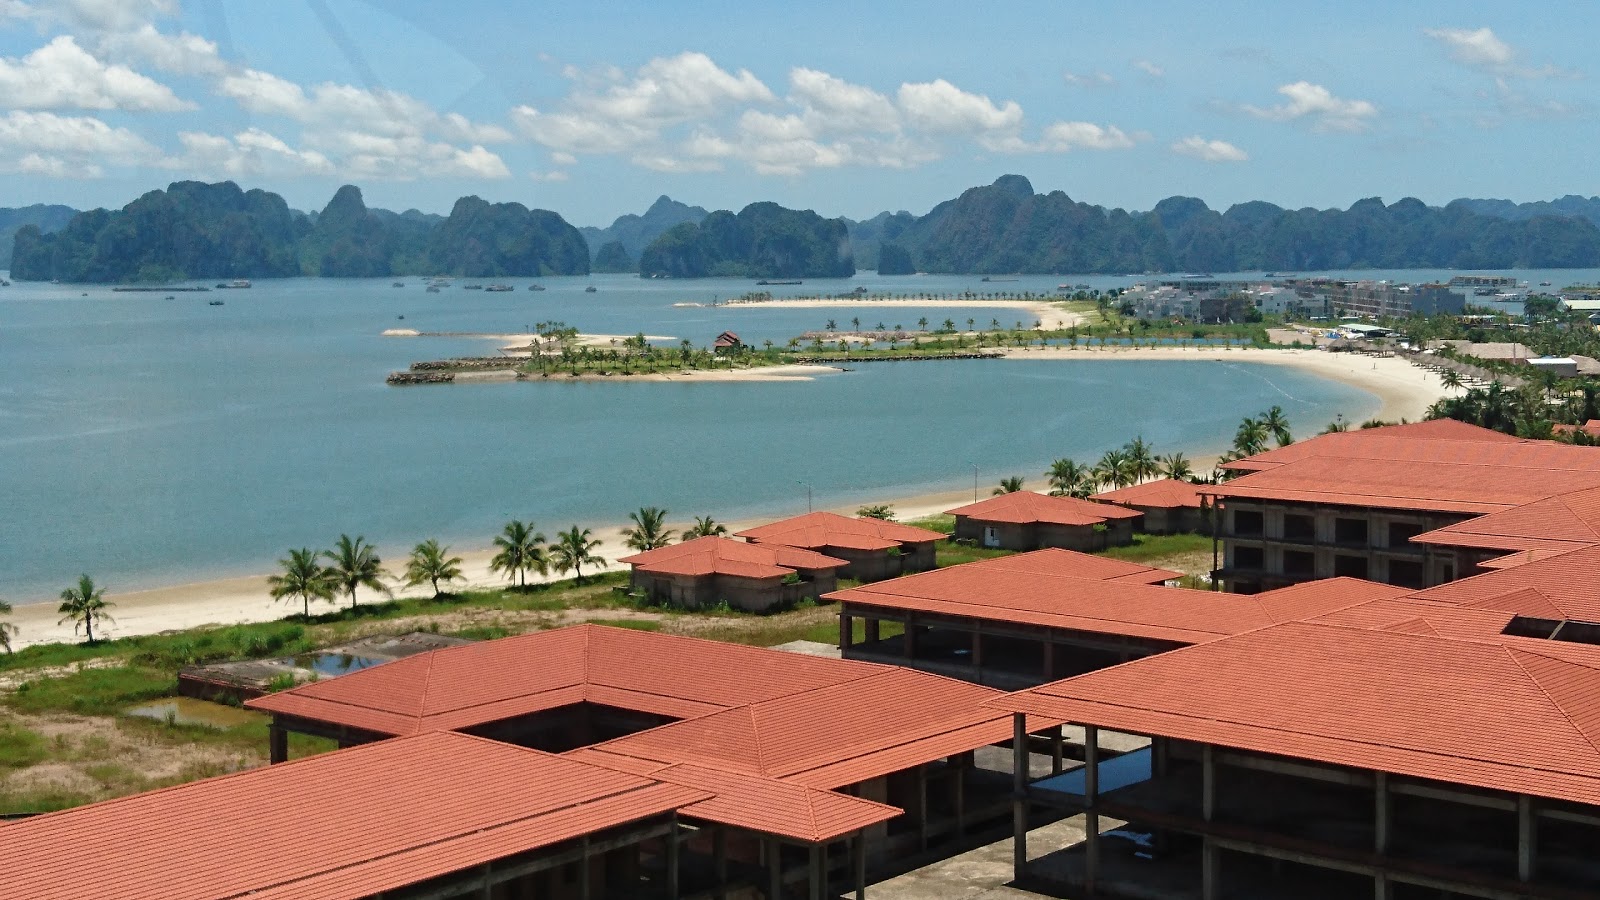 Foto van Tuan Chau Resort beach met recht en lang